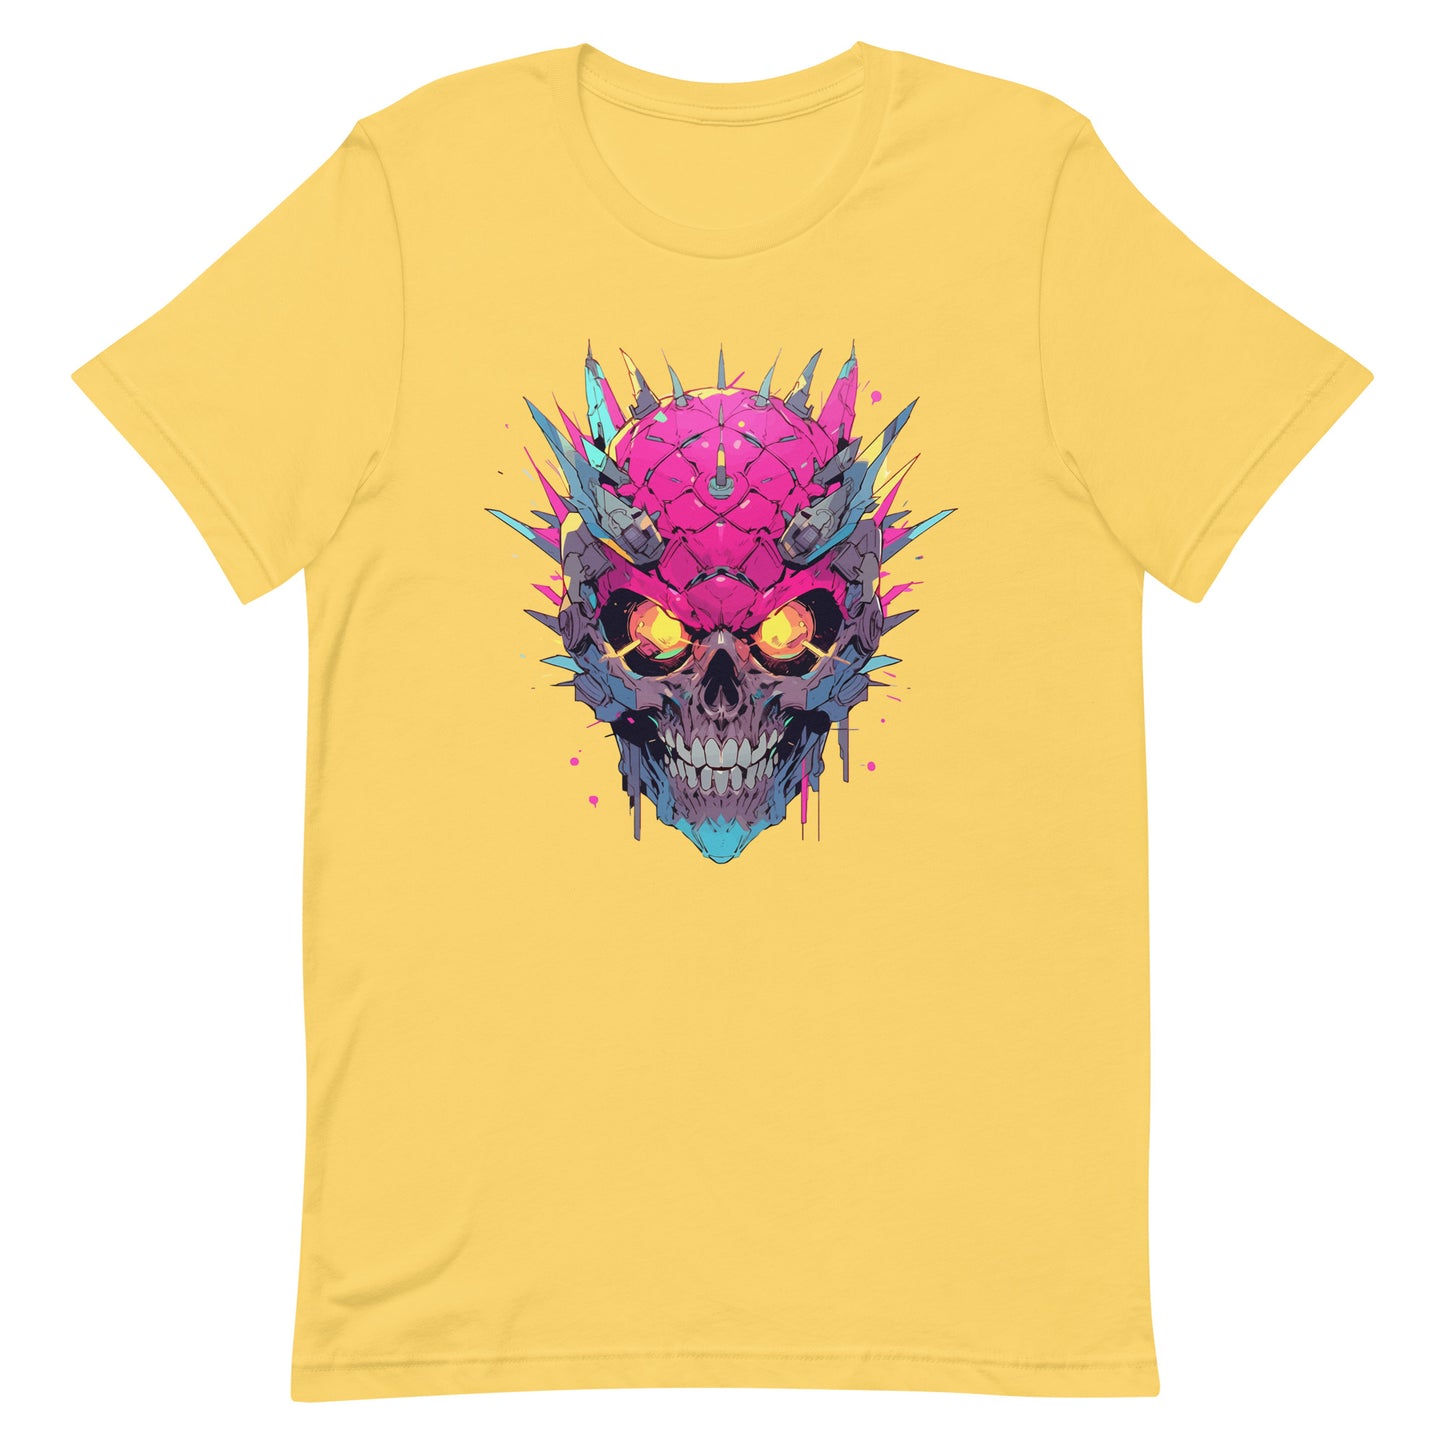 Cyberpunk pineapple skull, Fantastic yellow eyes, Fantasy fruit illustration, Pineapple monster Pop Art - Unisex t-shirt